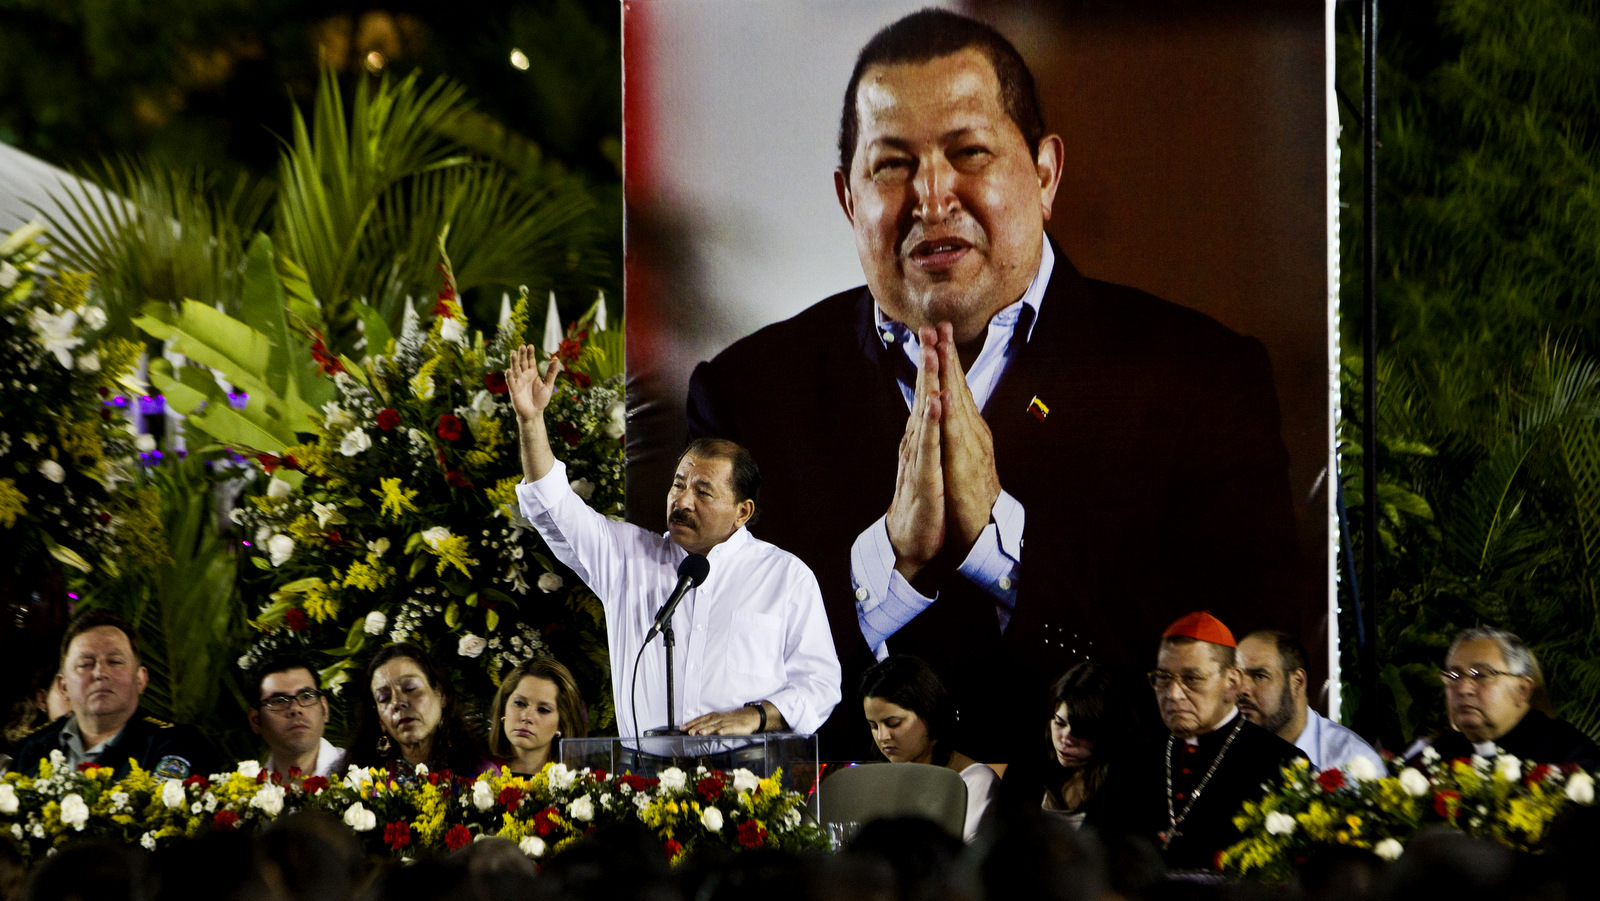 尼加拉瓜总统丹尼尔奥尔特加在2013年3月5日在马那瓜举行的已故雨果查韦斯颁奖典礼上发表讲话。Esteban Felix |美联社